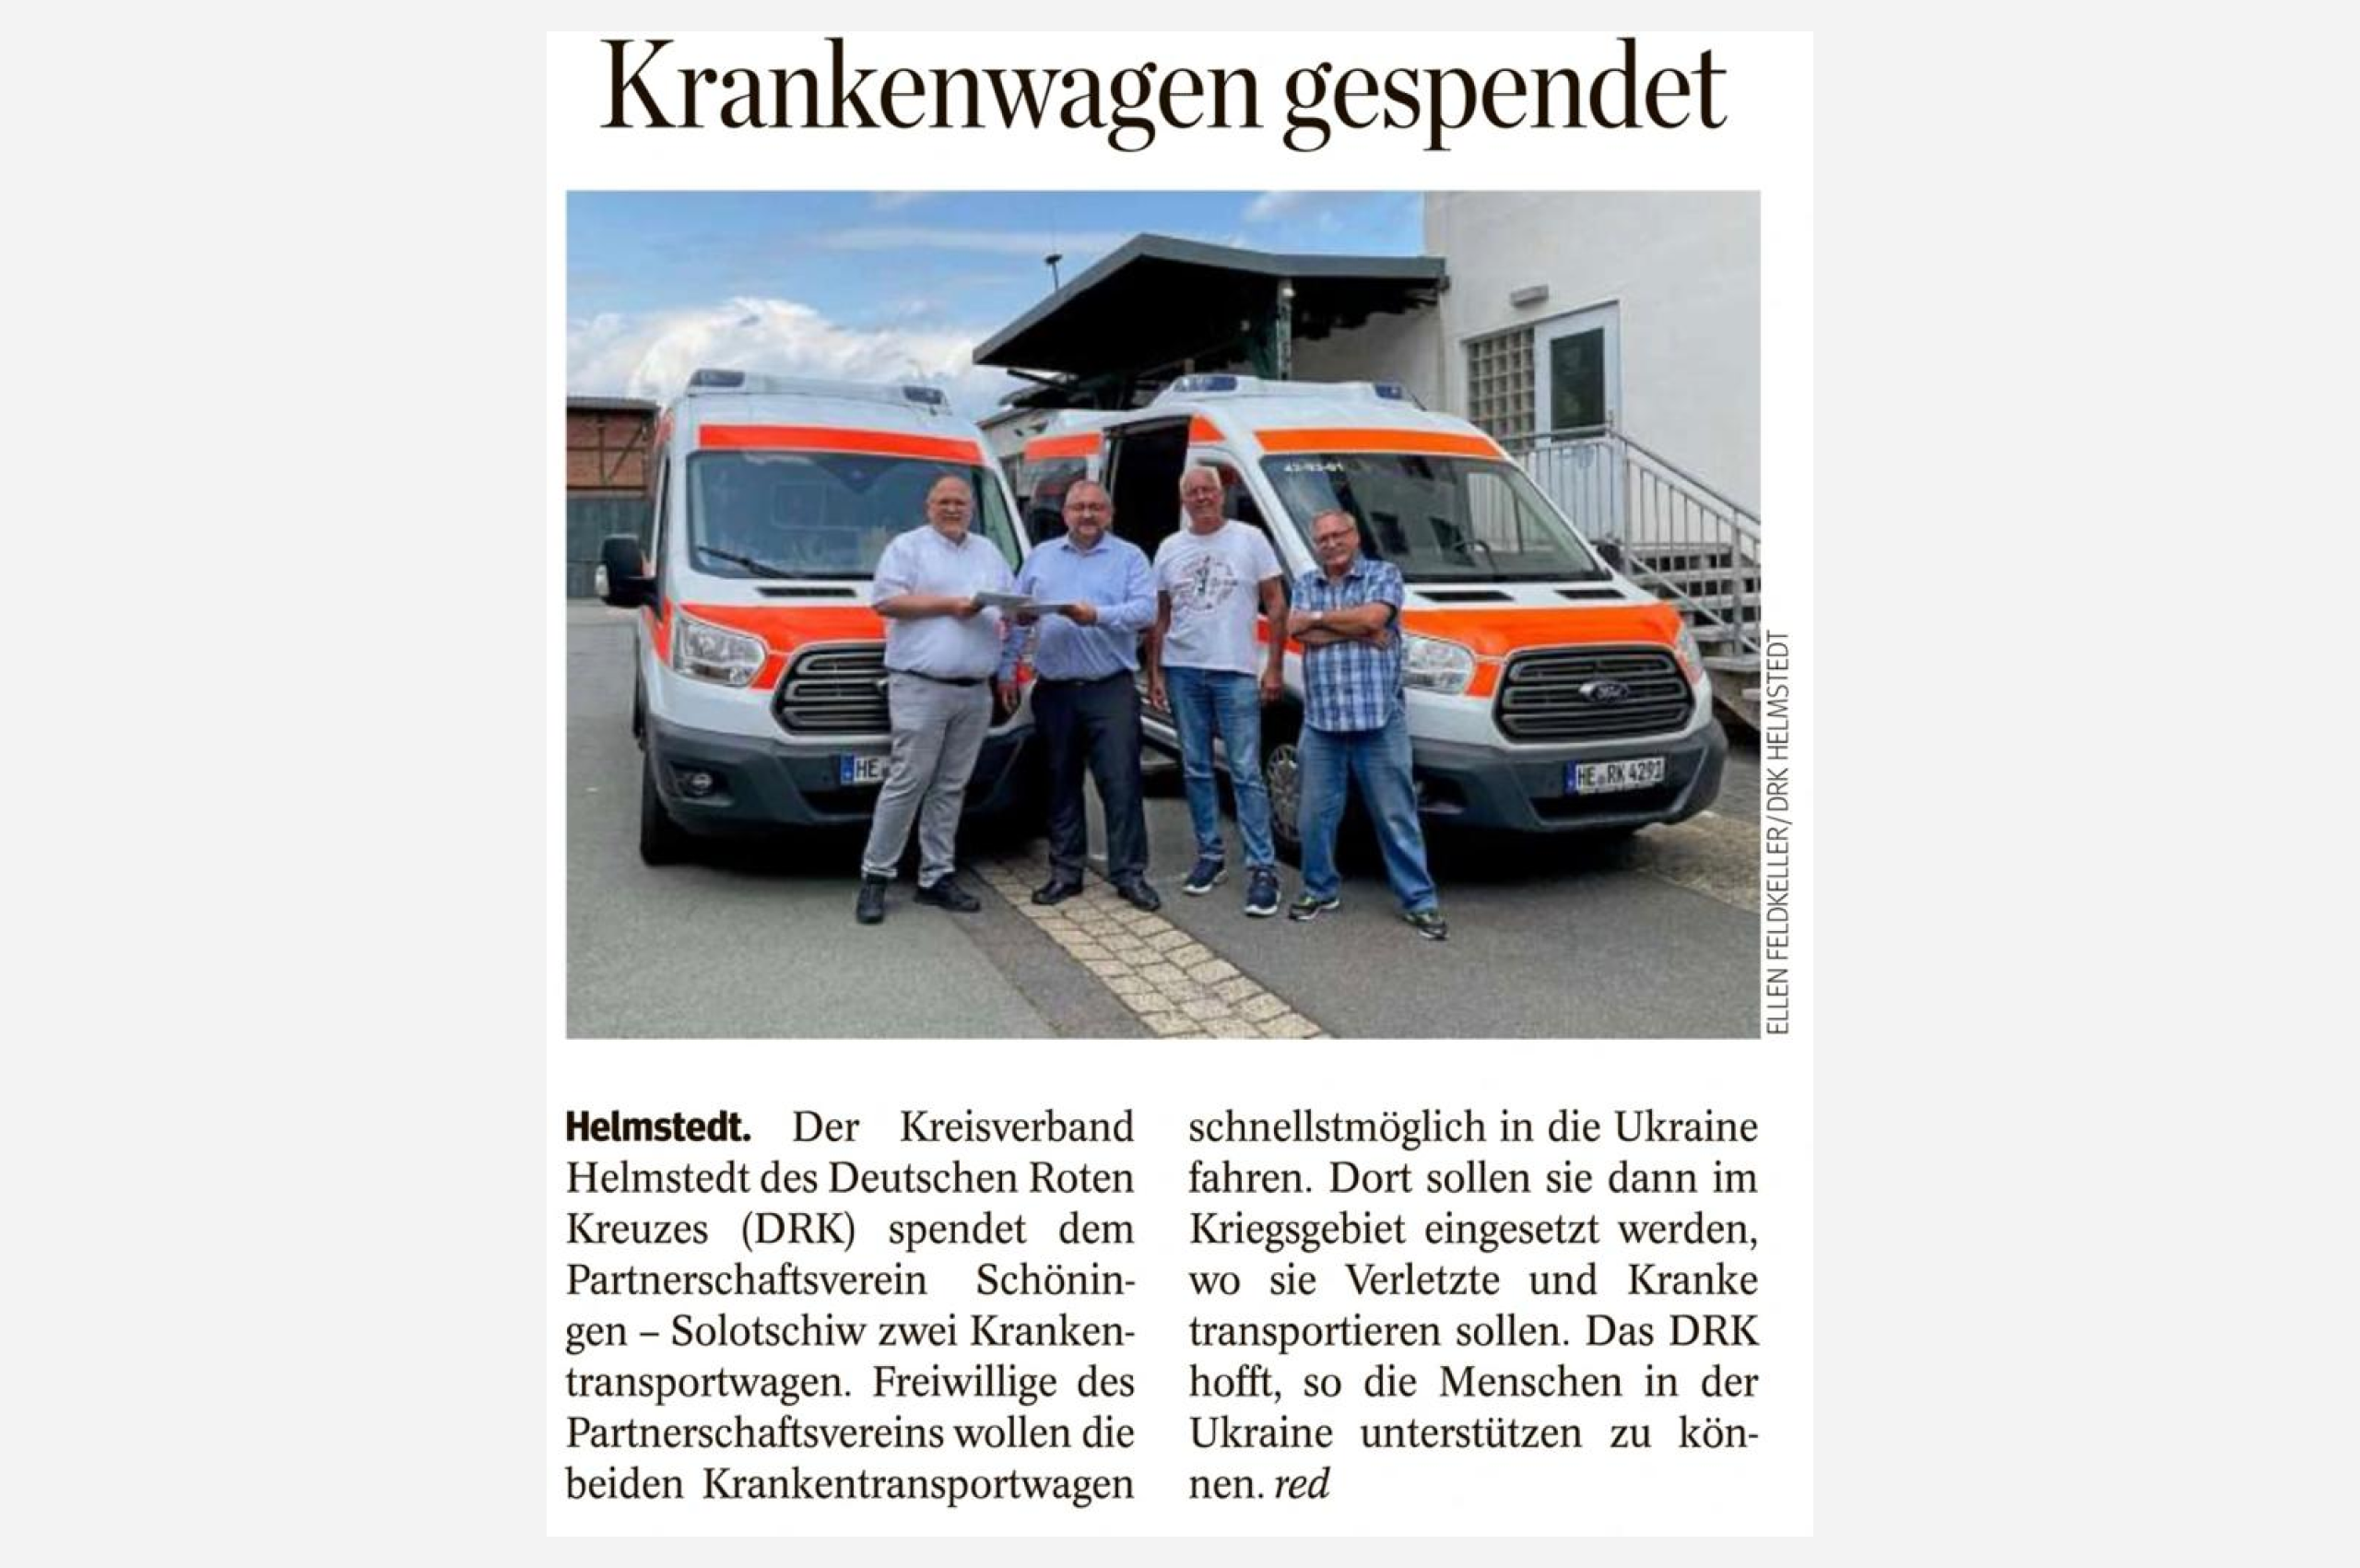 Der Kreisverband Helmstedt des Deutschen Roten Kreuzes (DRK) spendet dem Partnerschaftsverein Schöningen-Solotschiw 2 Krankentransportwagen.